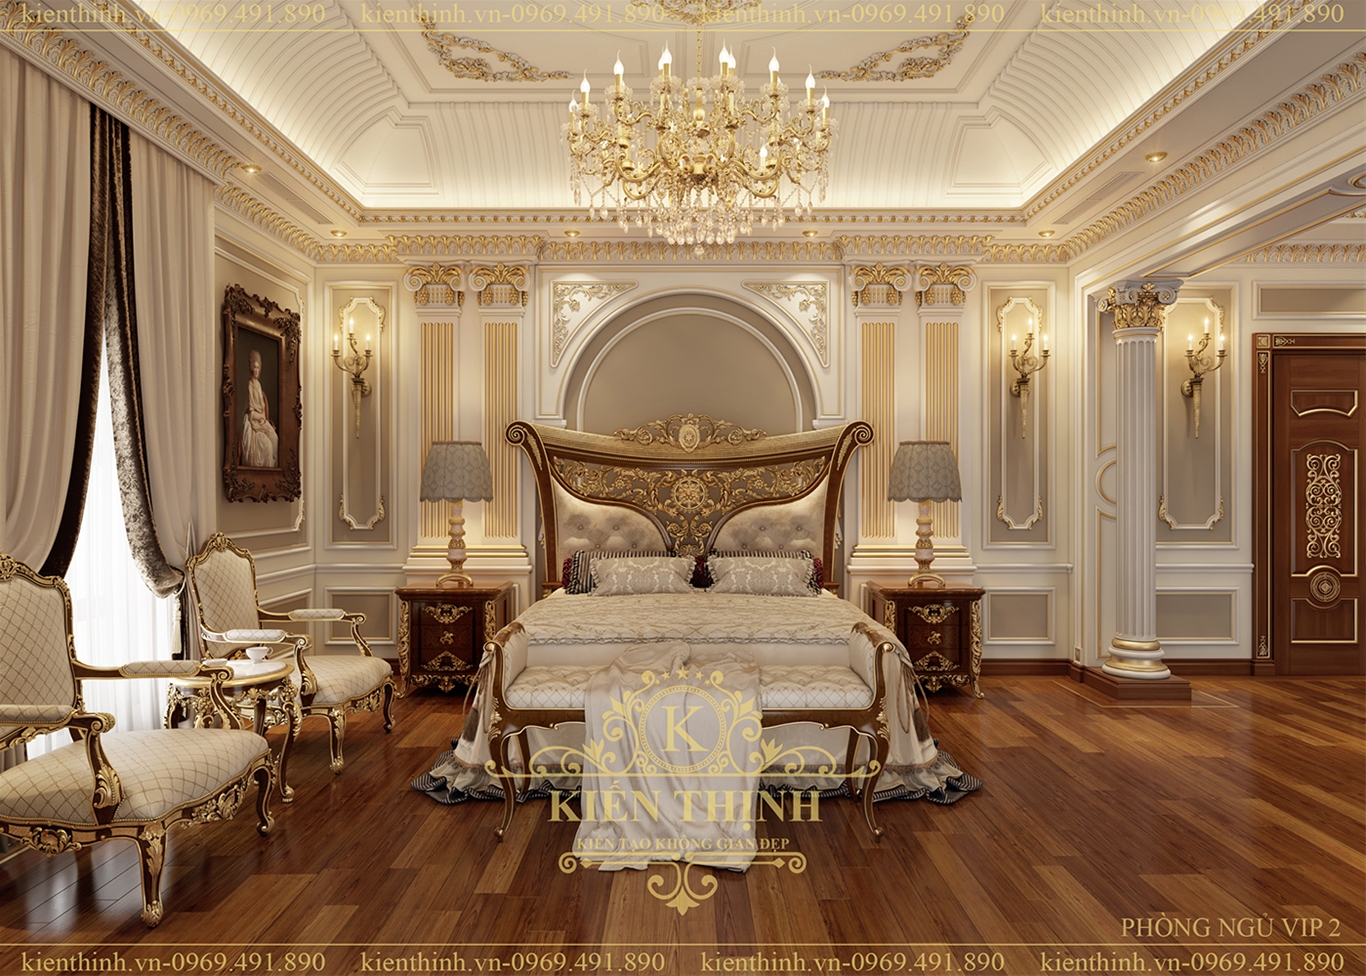 thiết kế nội thất phòng ngủ Master biệt thự lâu đài phong cách tân cổ điển châu Âu sang trọng ở Đồng Nai 06